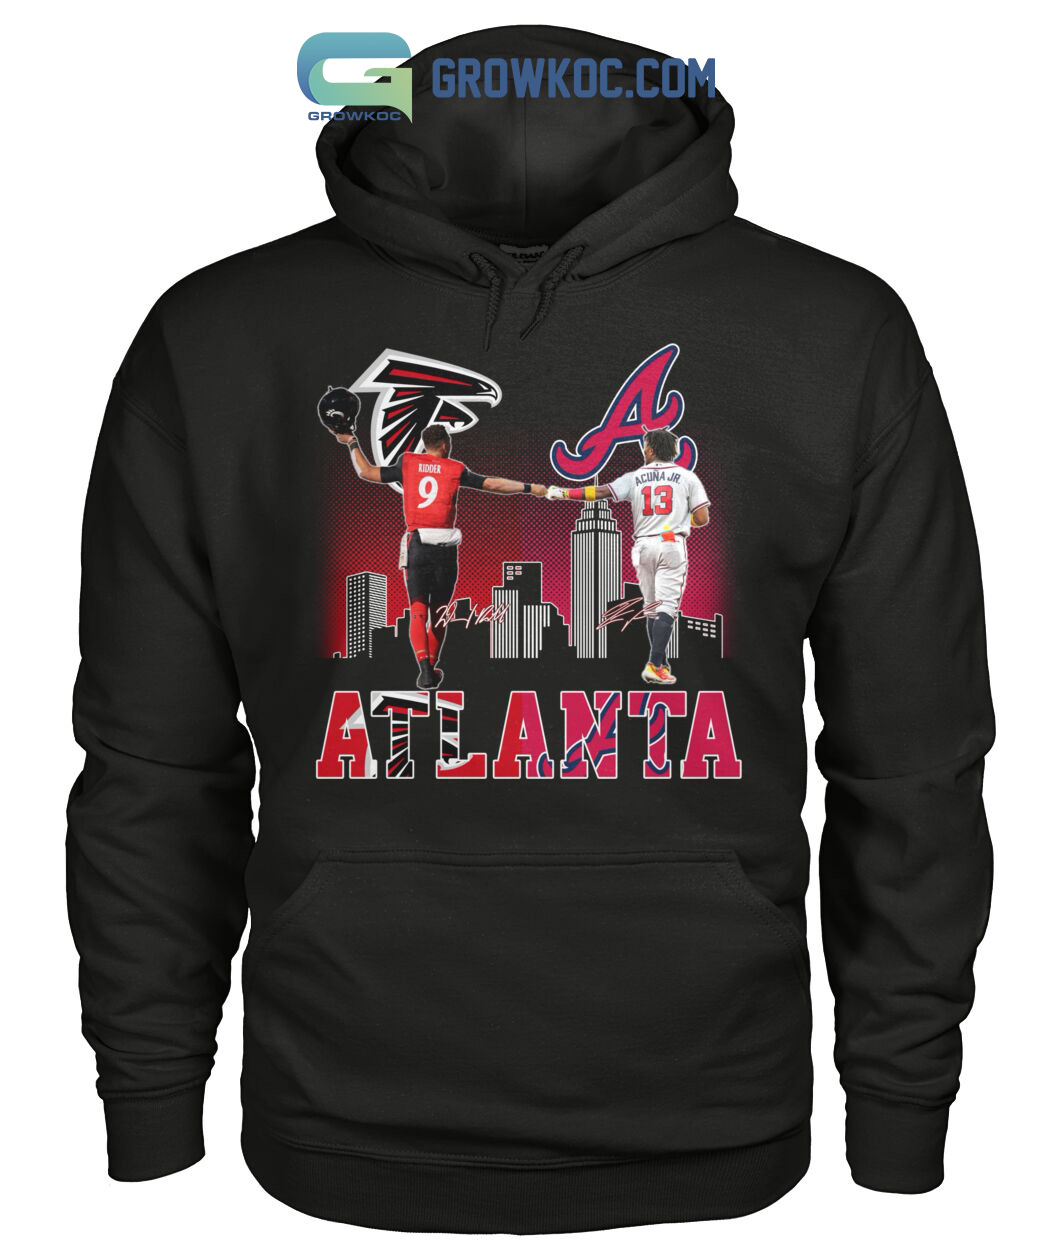 Atlanta Falcons Ridder And Braves Acuna Jr City Champions shirt